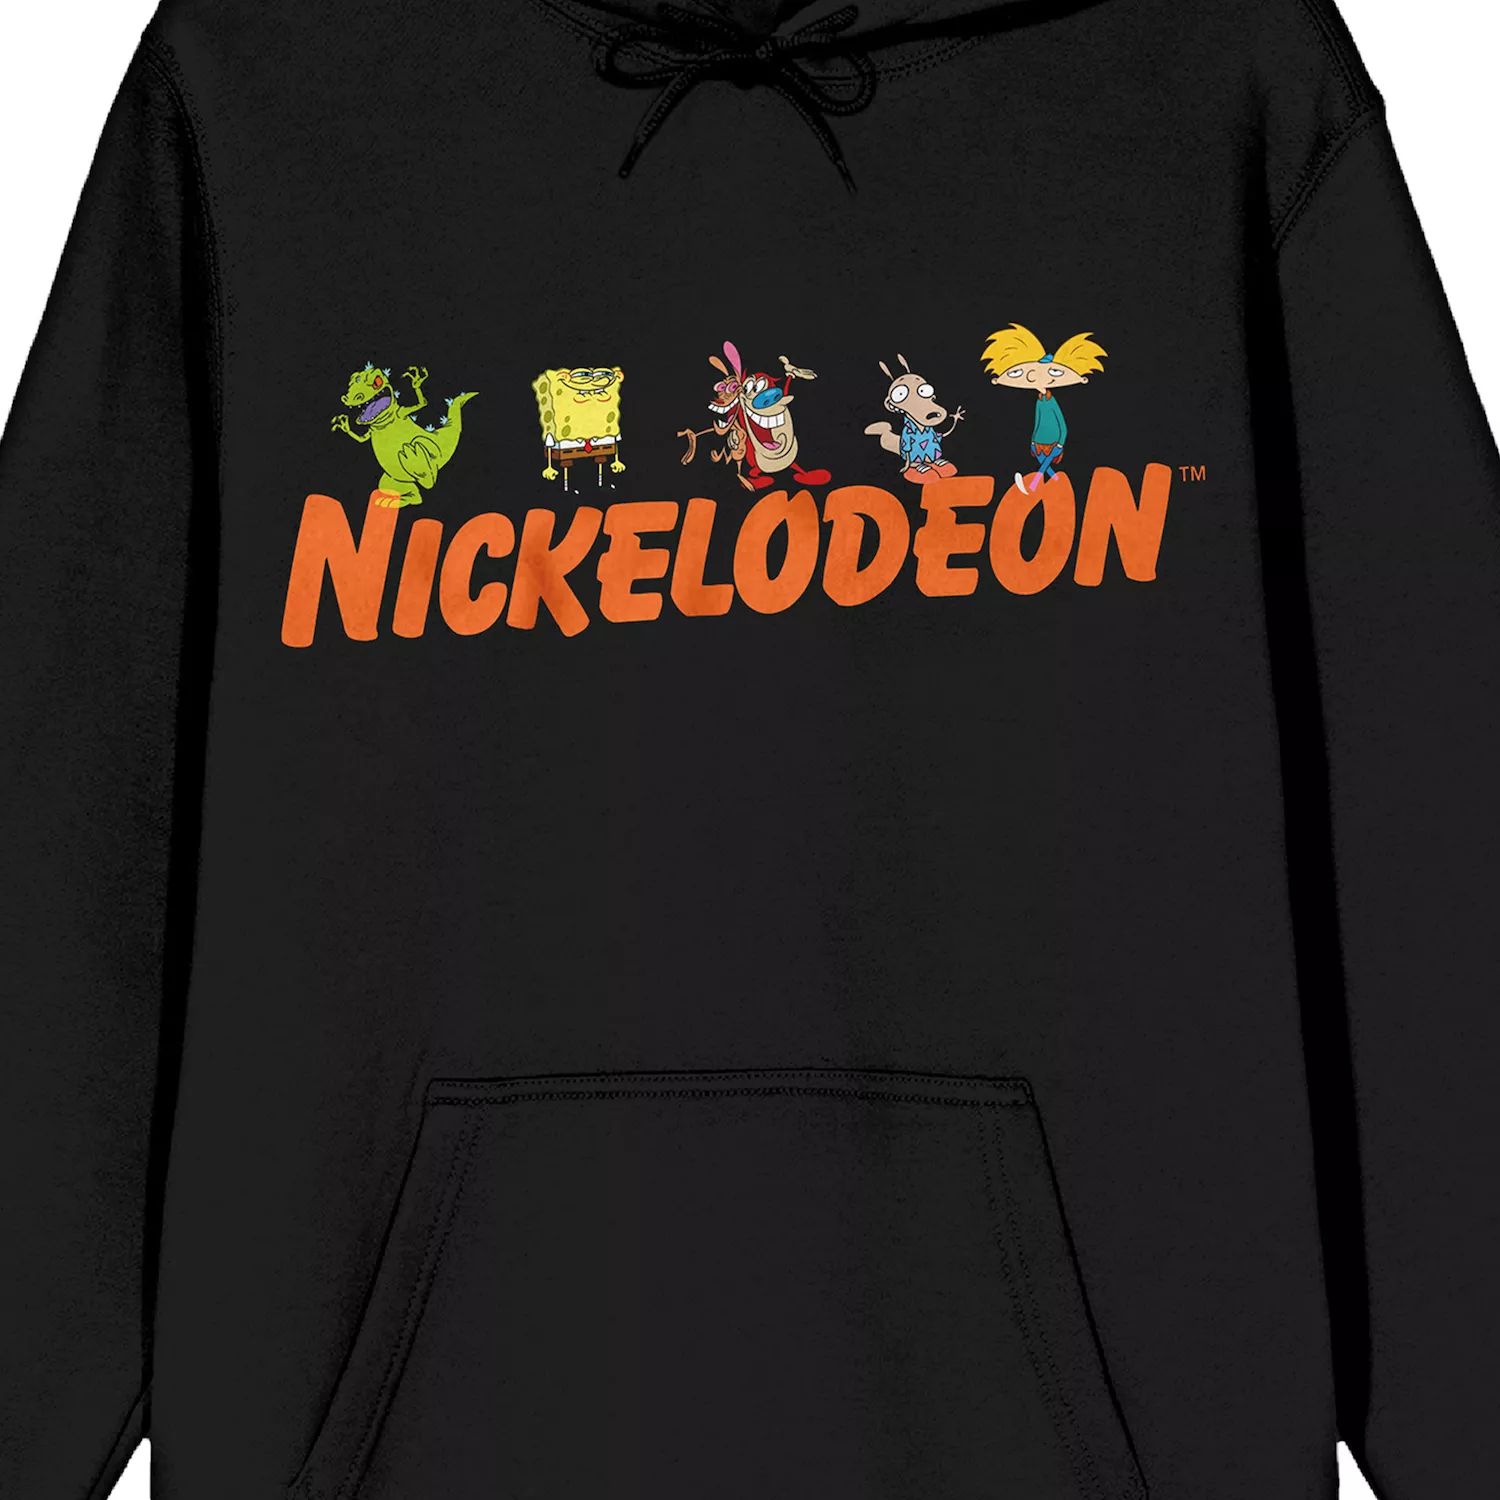 Мужская толстовка с рисунком Nickelodeon 90-х годов Licensed Character мужская футболка nickelodeon 90 е это сплошной графический рисунок licensed character